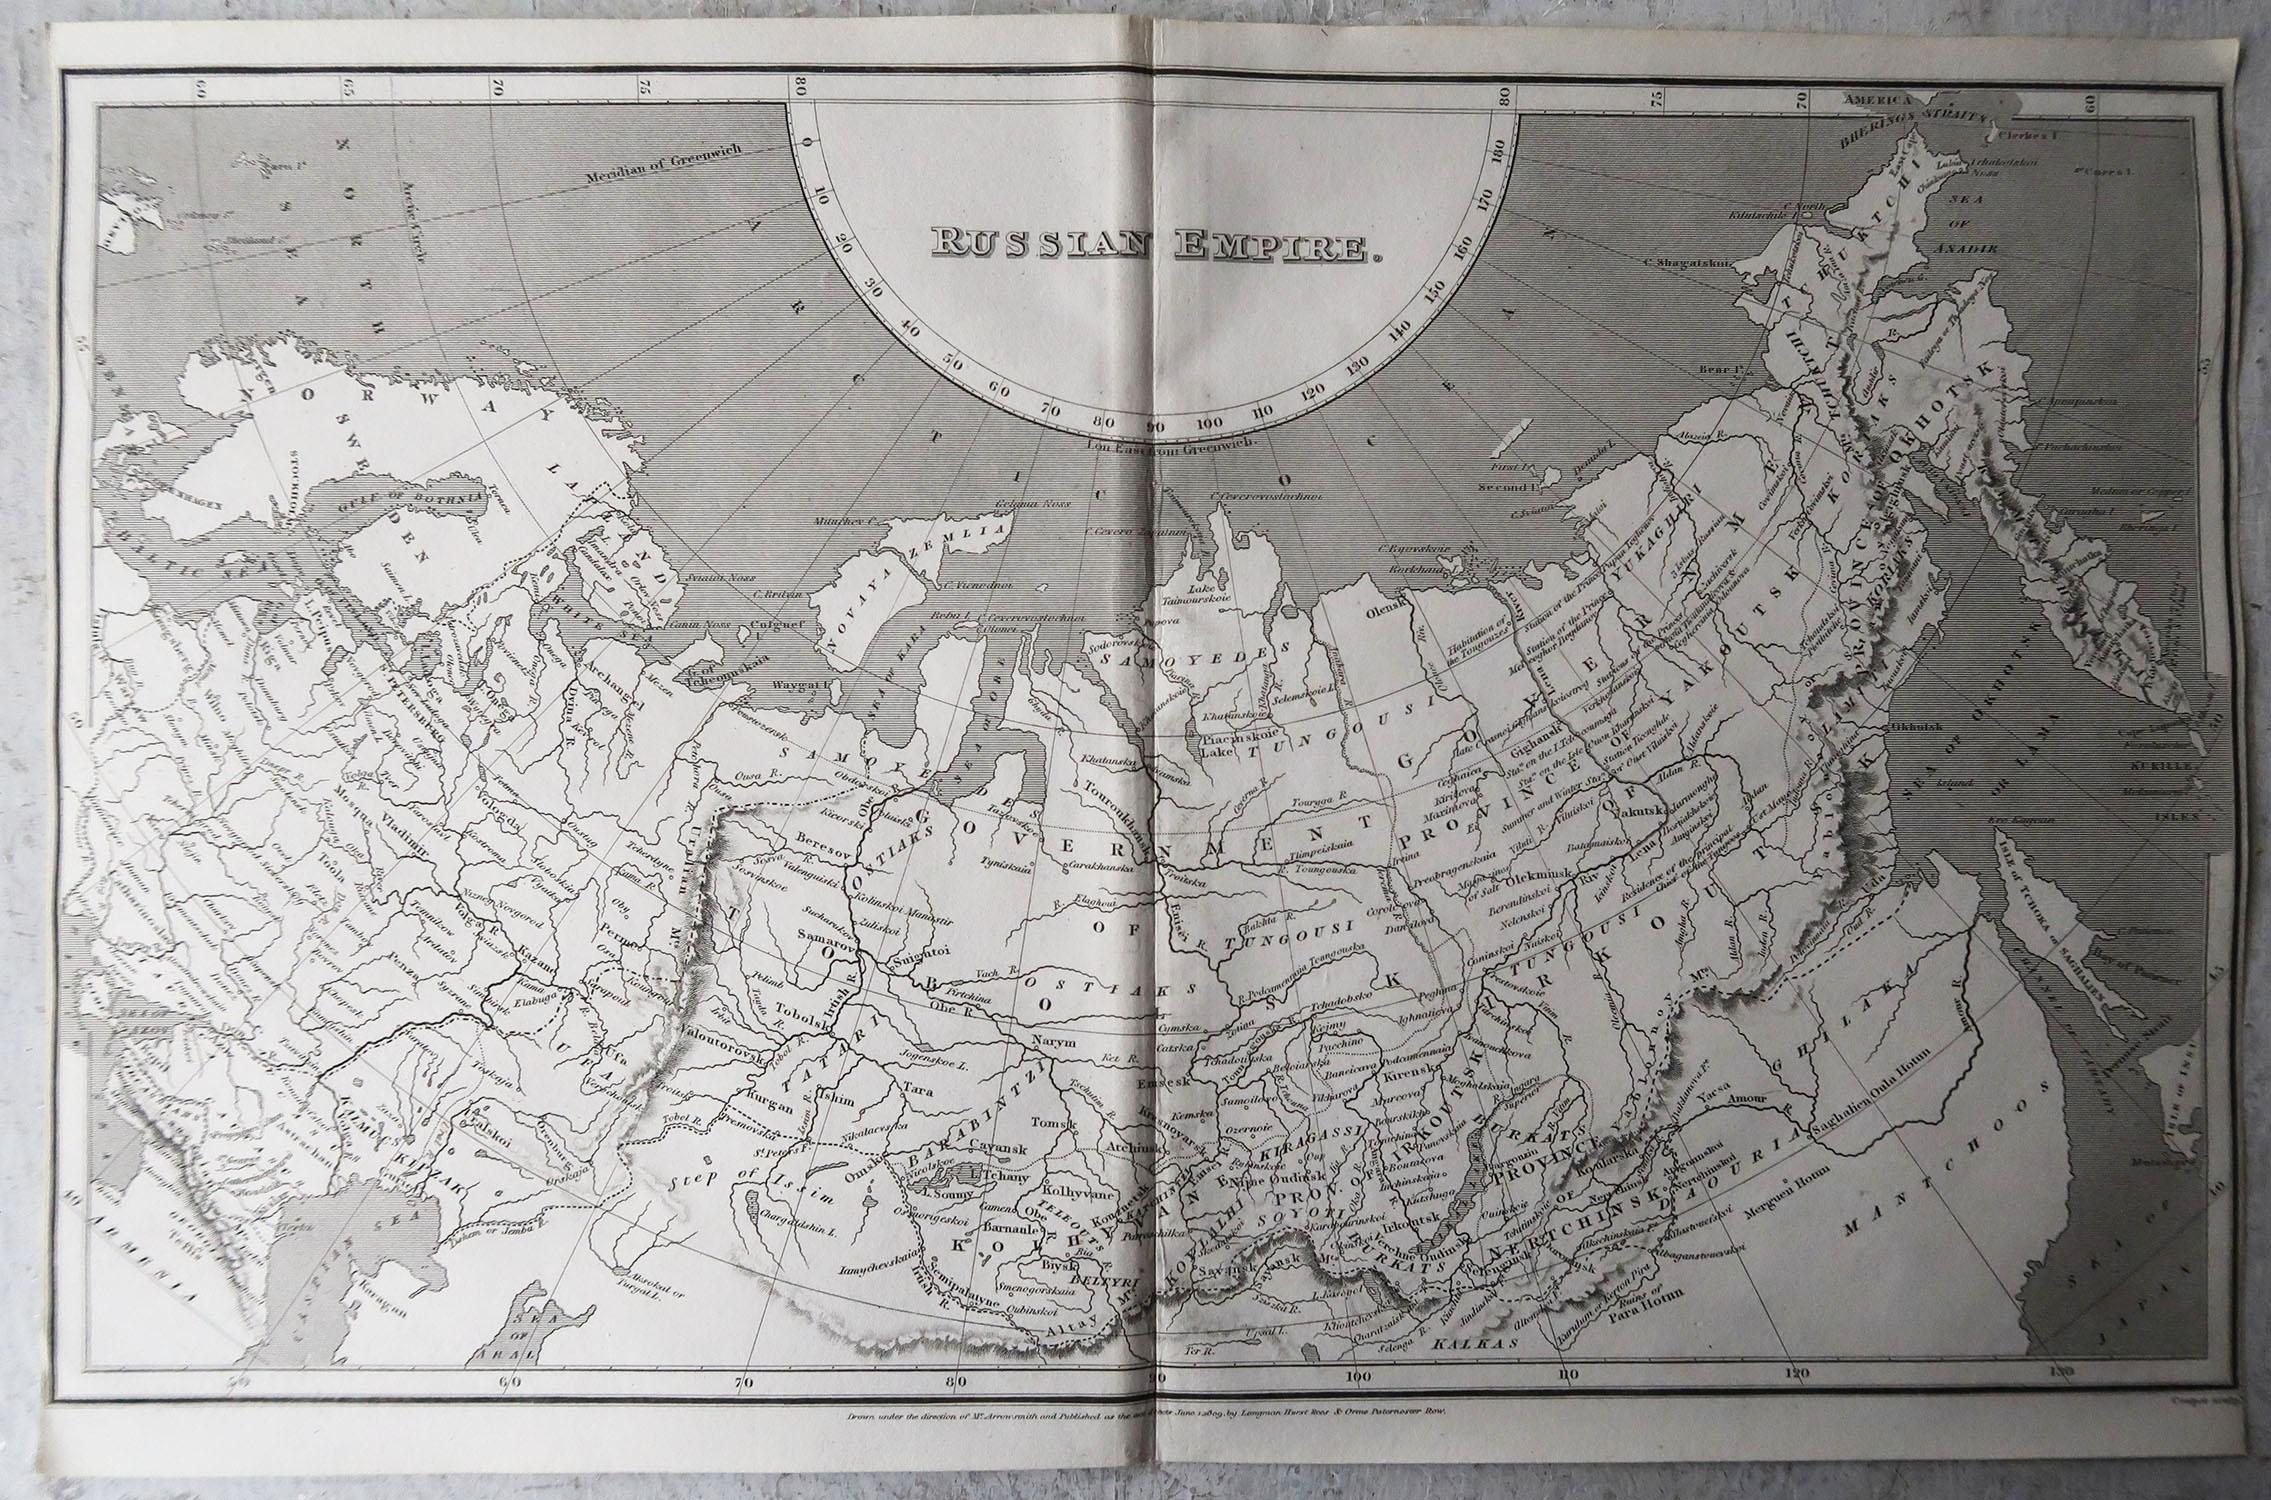 Grande carte de la Russie

Dessiné sous la direction de Arrowsmith

Gravure sur cuivre

Publié par Longman, Hurst, Rees, Orme and Brown, 1820

Non encadré.